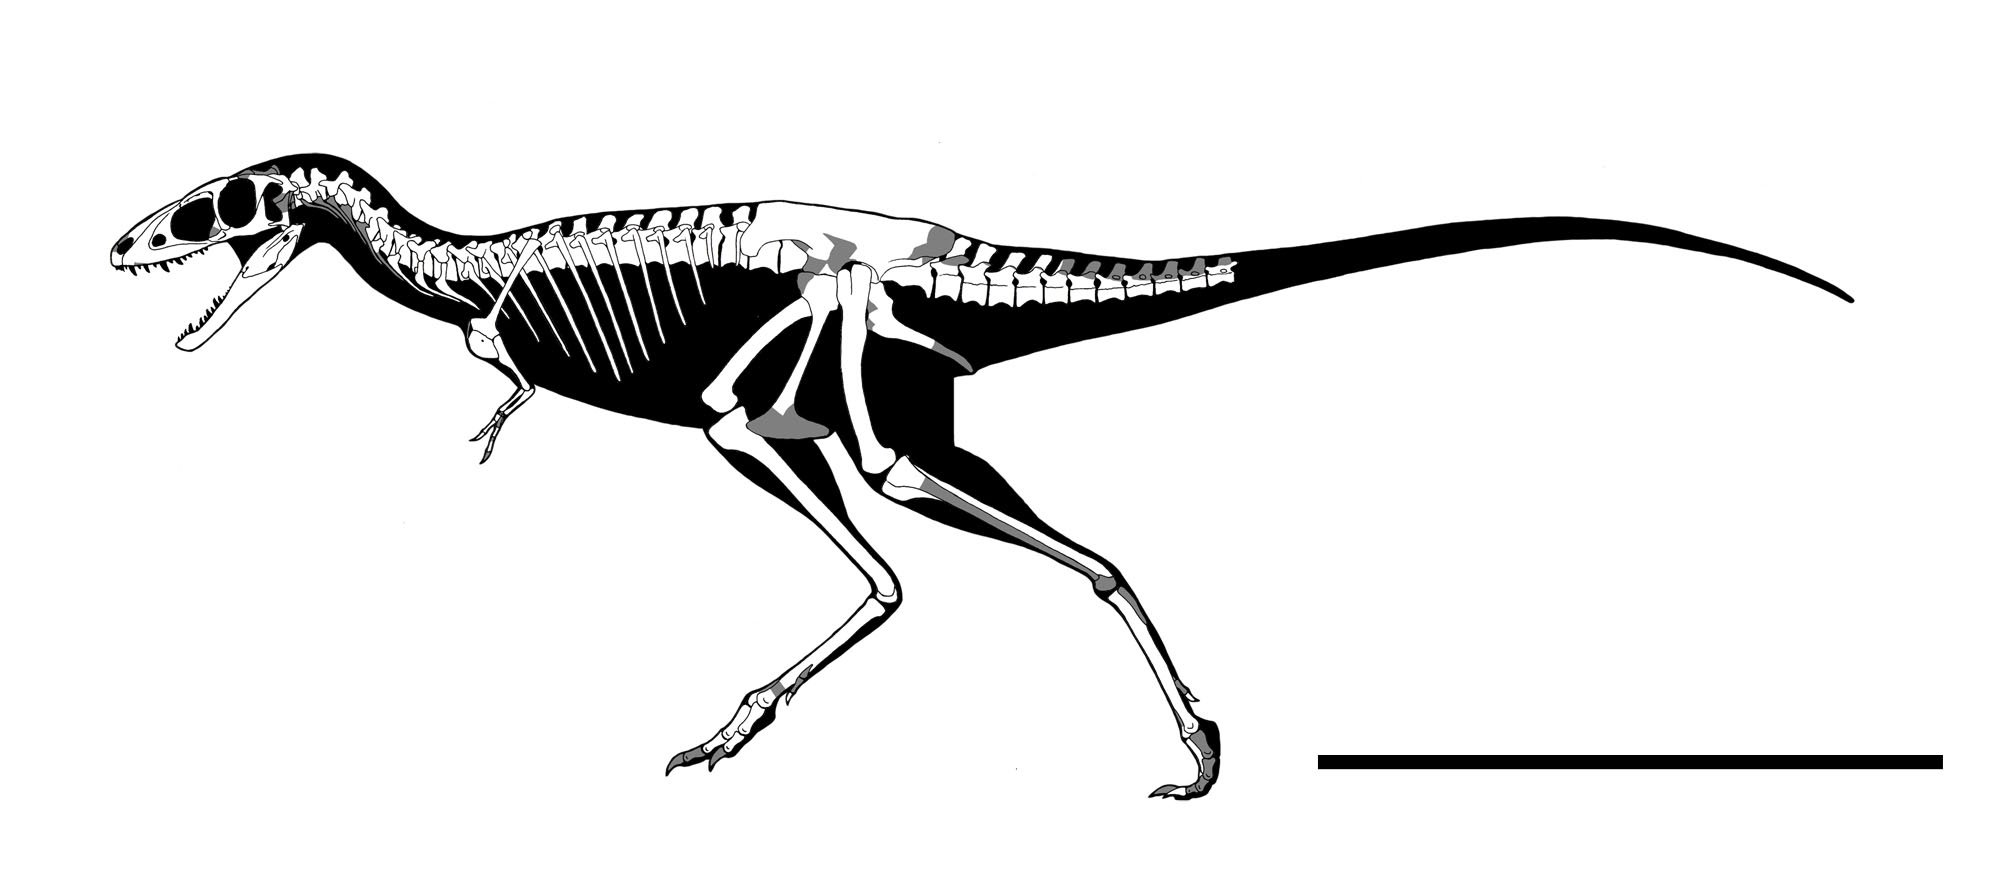 Twitter 上的 らえらぷす 新 恐竜骨格図集 発売中 うっかり忘れてたアパラチオサウルス どうも亜成体くさいので 成体はもうちょい大きかったはず 成体になると相対的に頭はもうちょっと小さく見えたかもしんない T Co Celfnrrerr Twitter